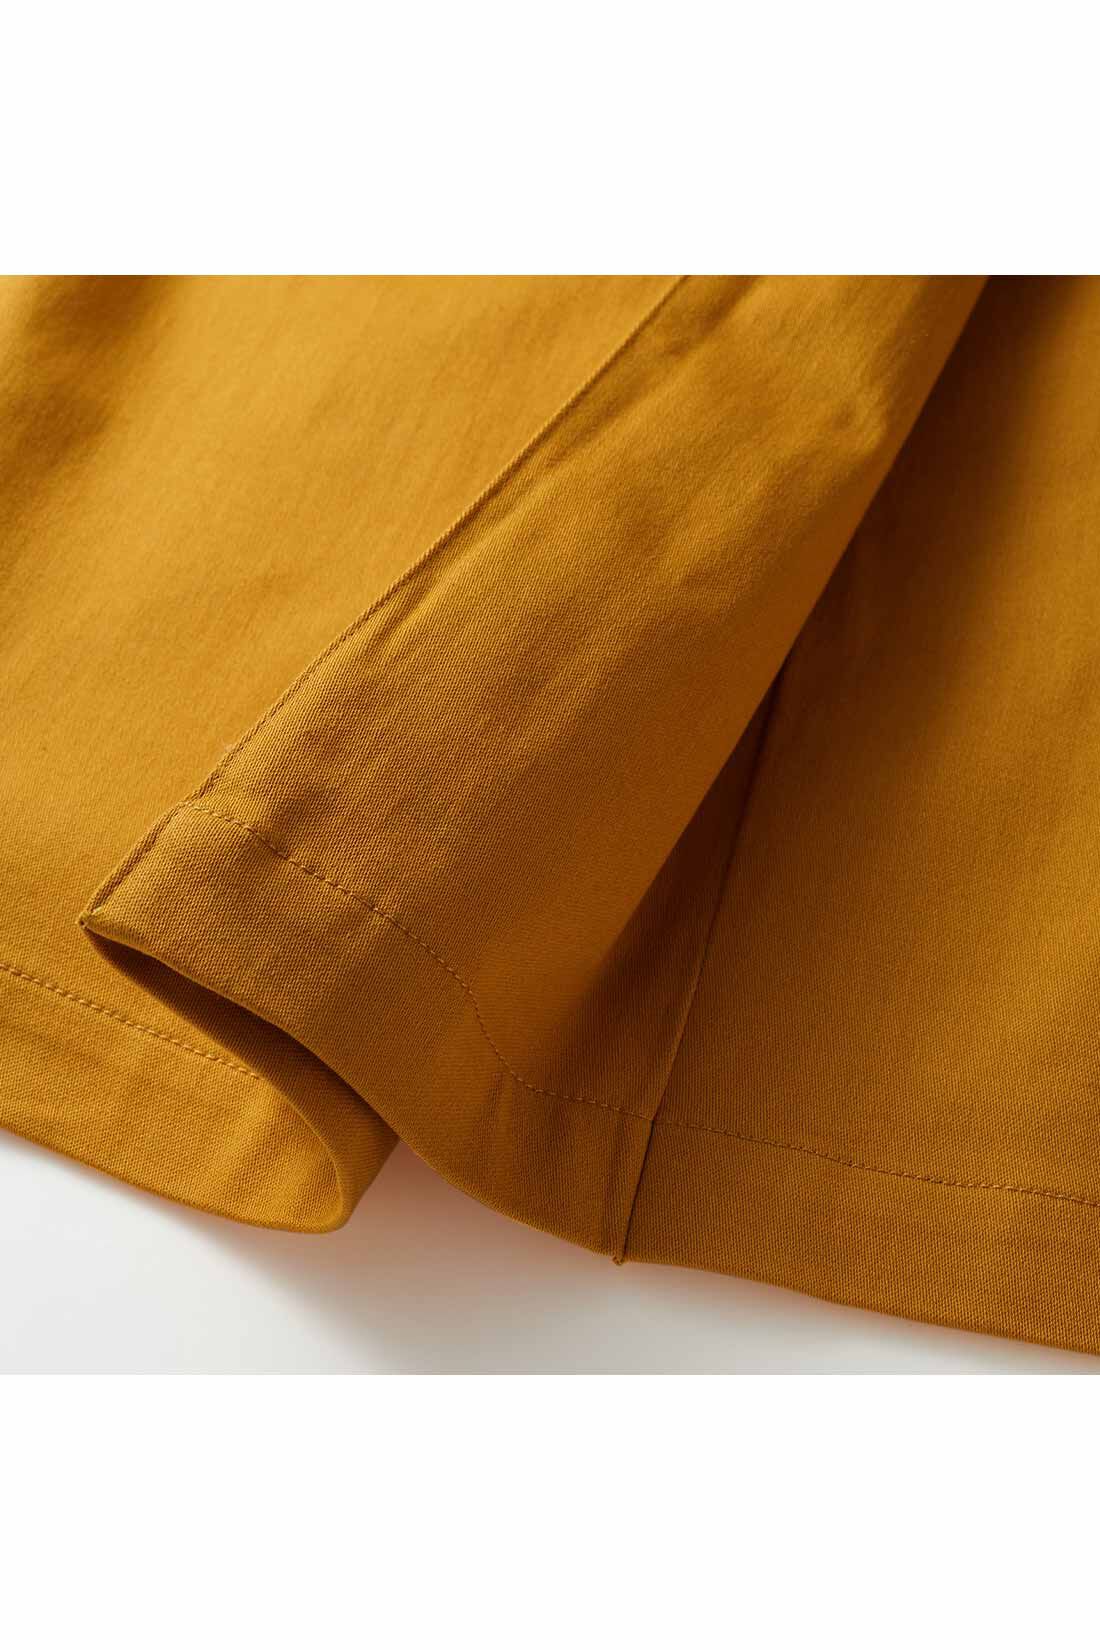 イディット|IEDIT[イディット]　ラップ風ストレッチロングスカート〈マスタードイエロー〉|ラップスカートに見えて、実はつながっている折り返しデザイン。